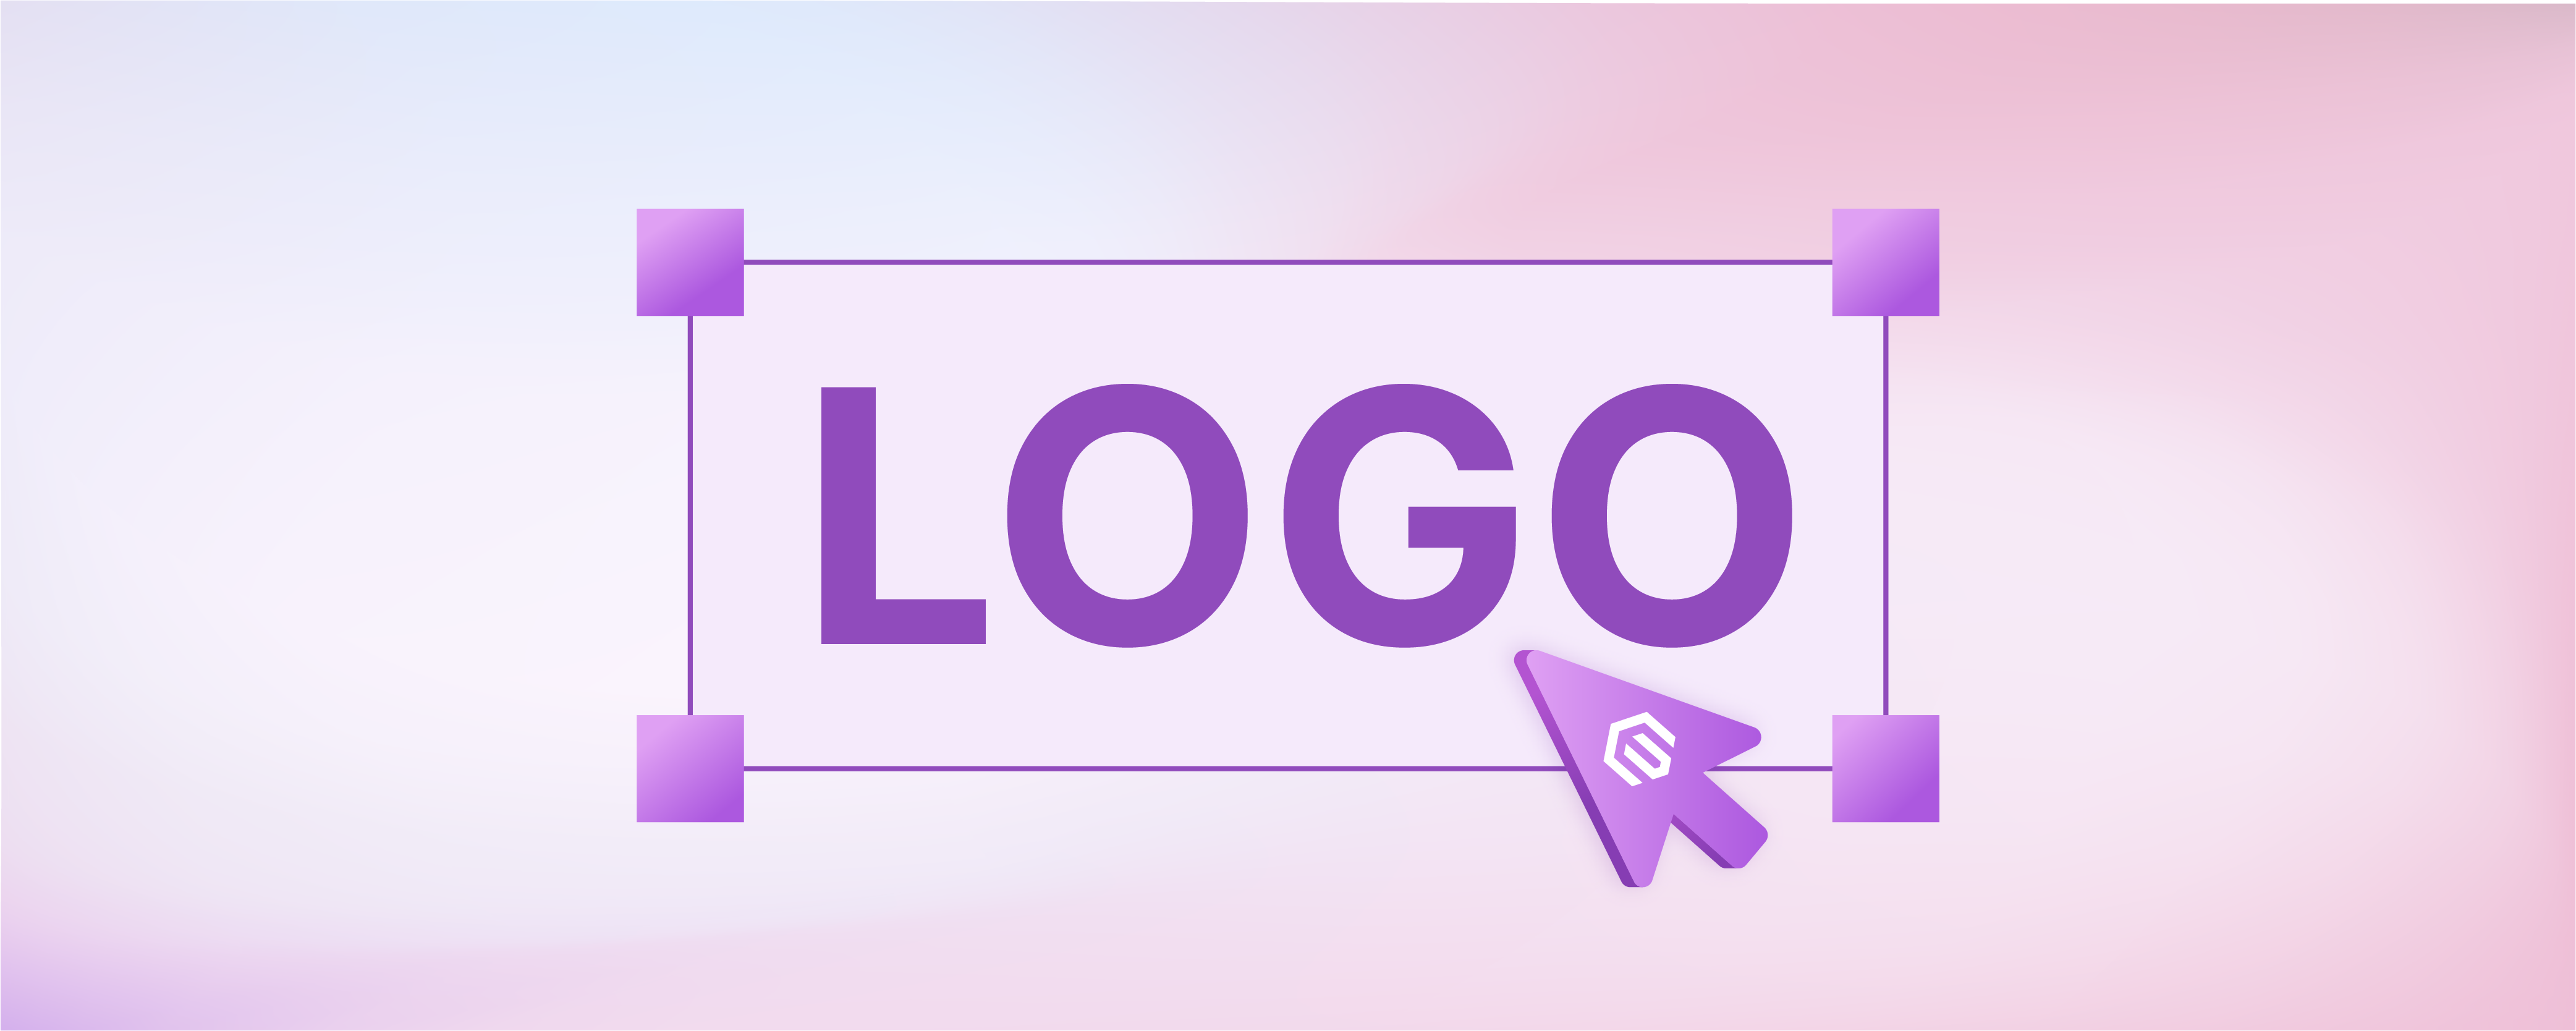 How to Design a Magento Logo for Ecommerce Website?